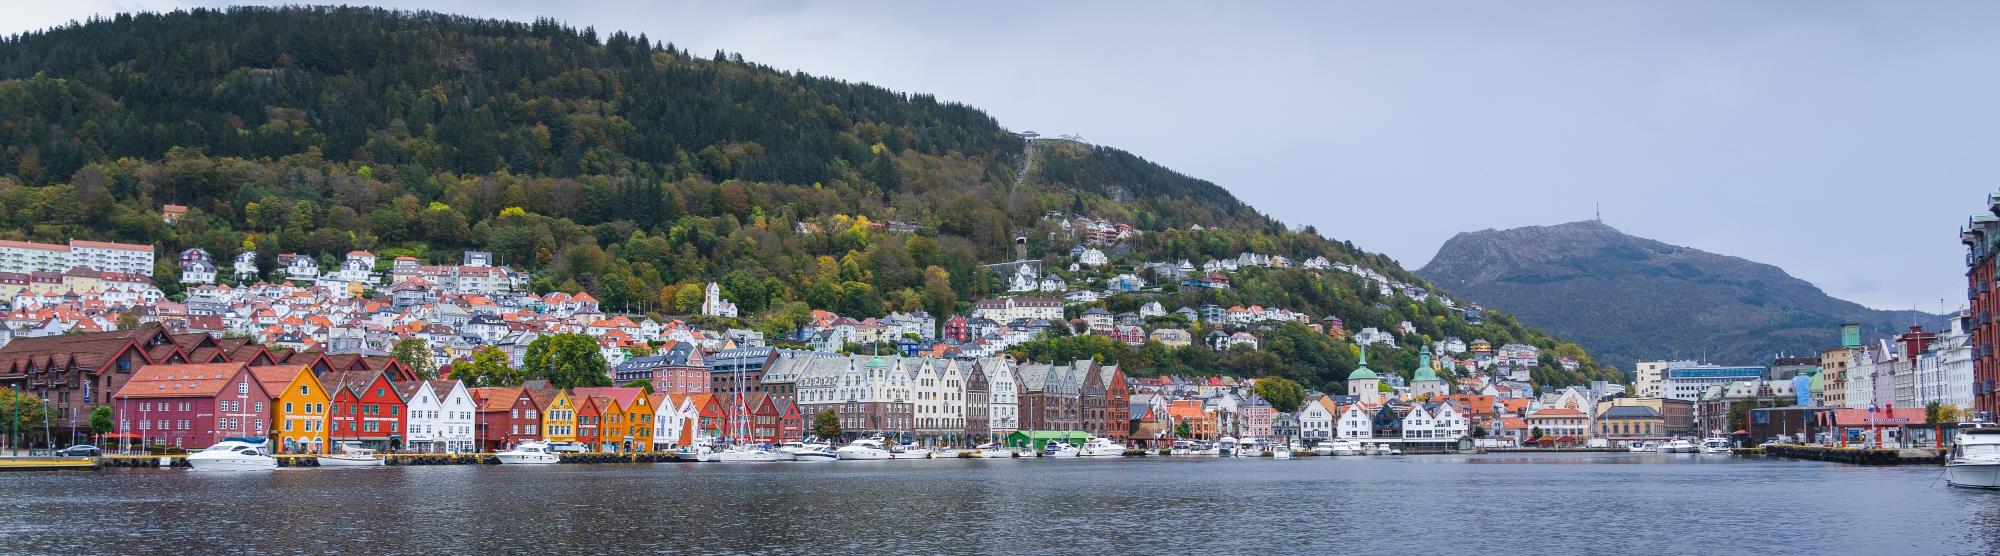 Wochenendtrip von Frankfurt nach Bergen in Norwegen